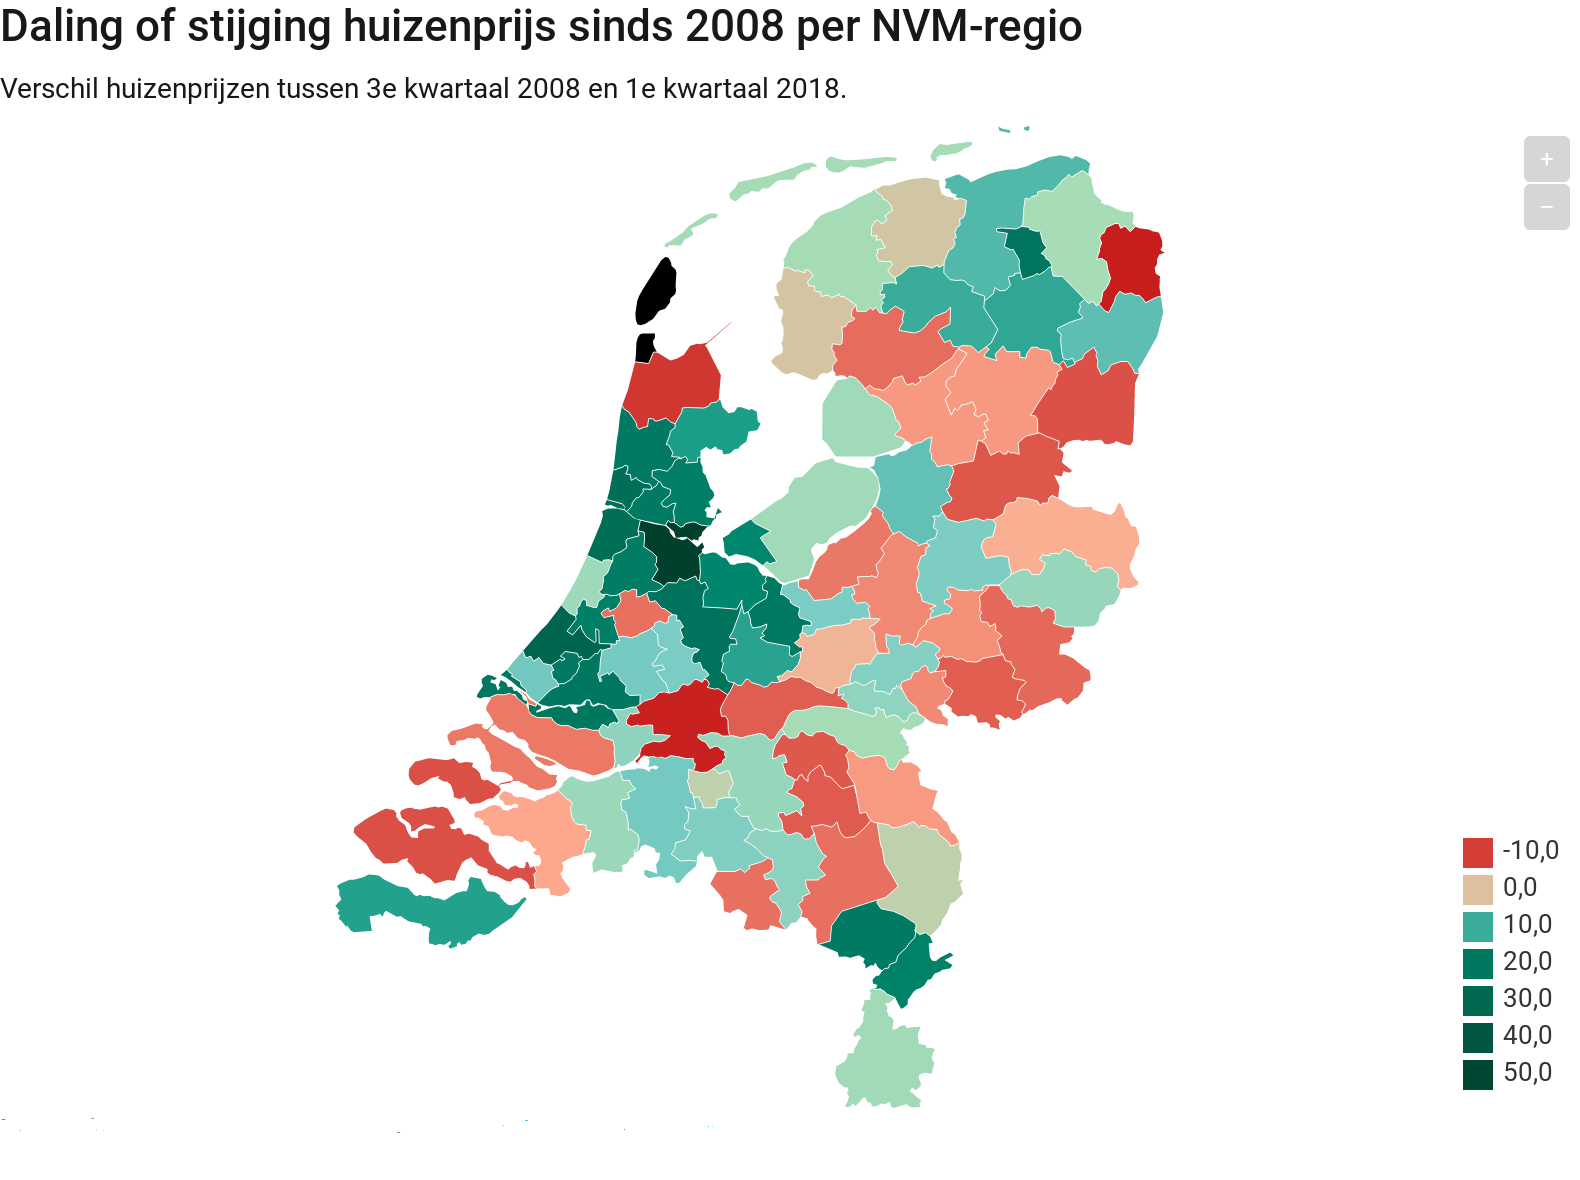 huizenprijs, hoog, Nederland, regio 2018